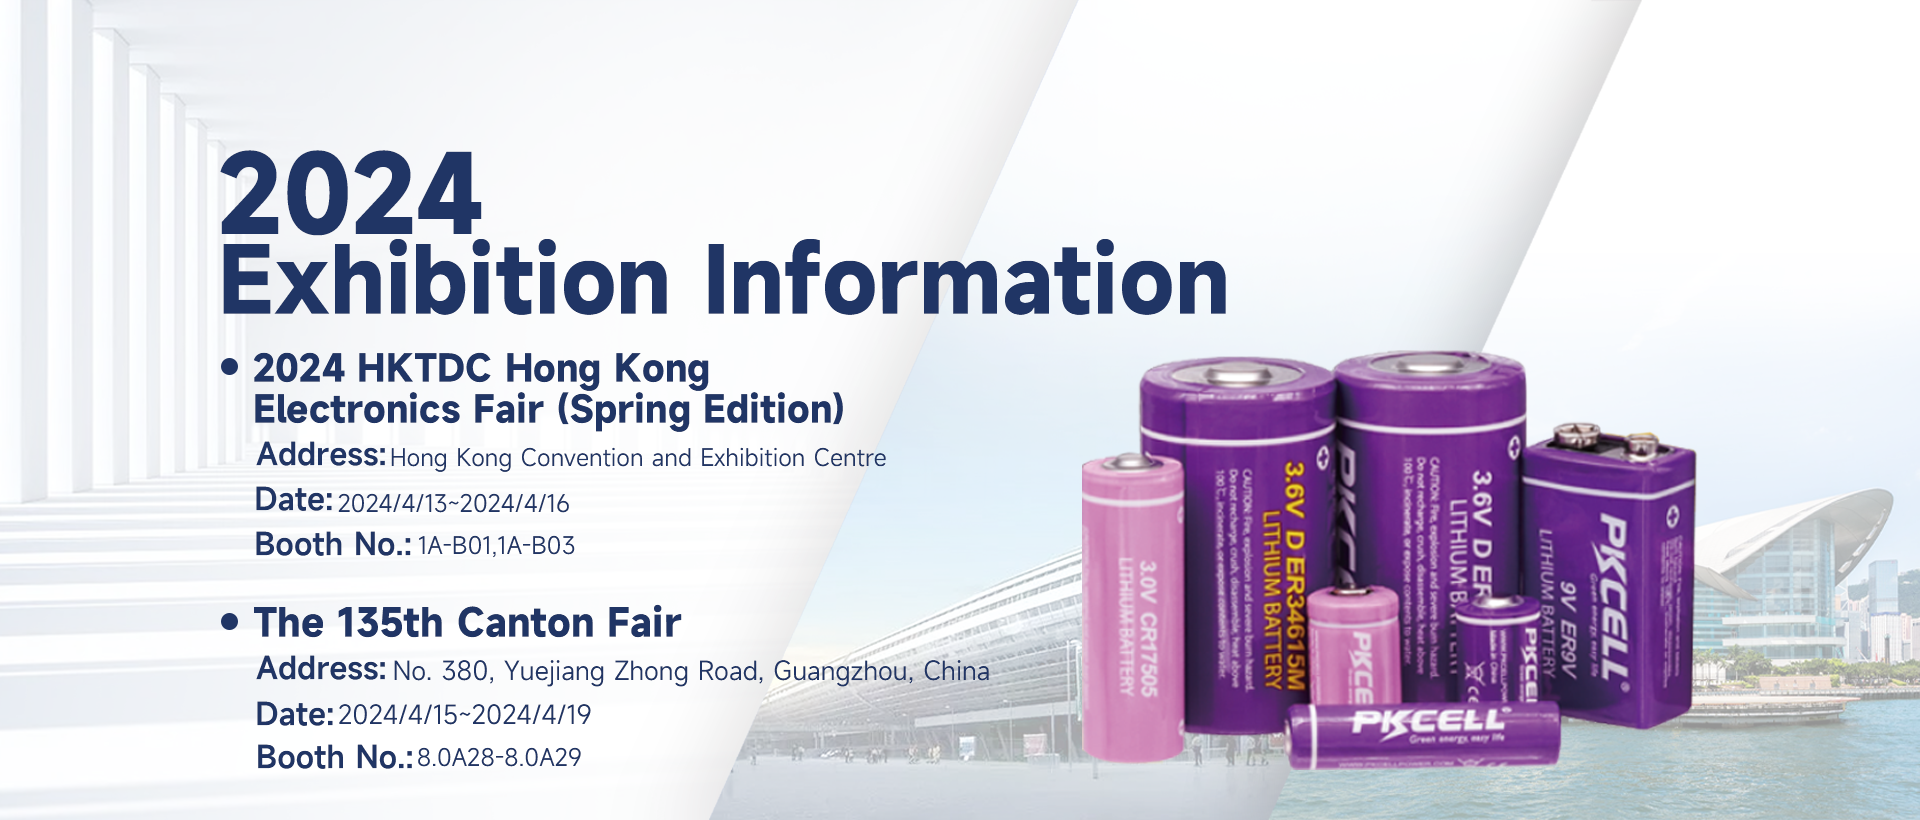 PKCELL-invitasjon til HKTDC Electronics Fair og Canton Fair-2024